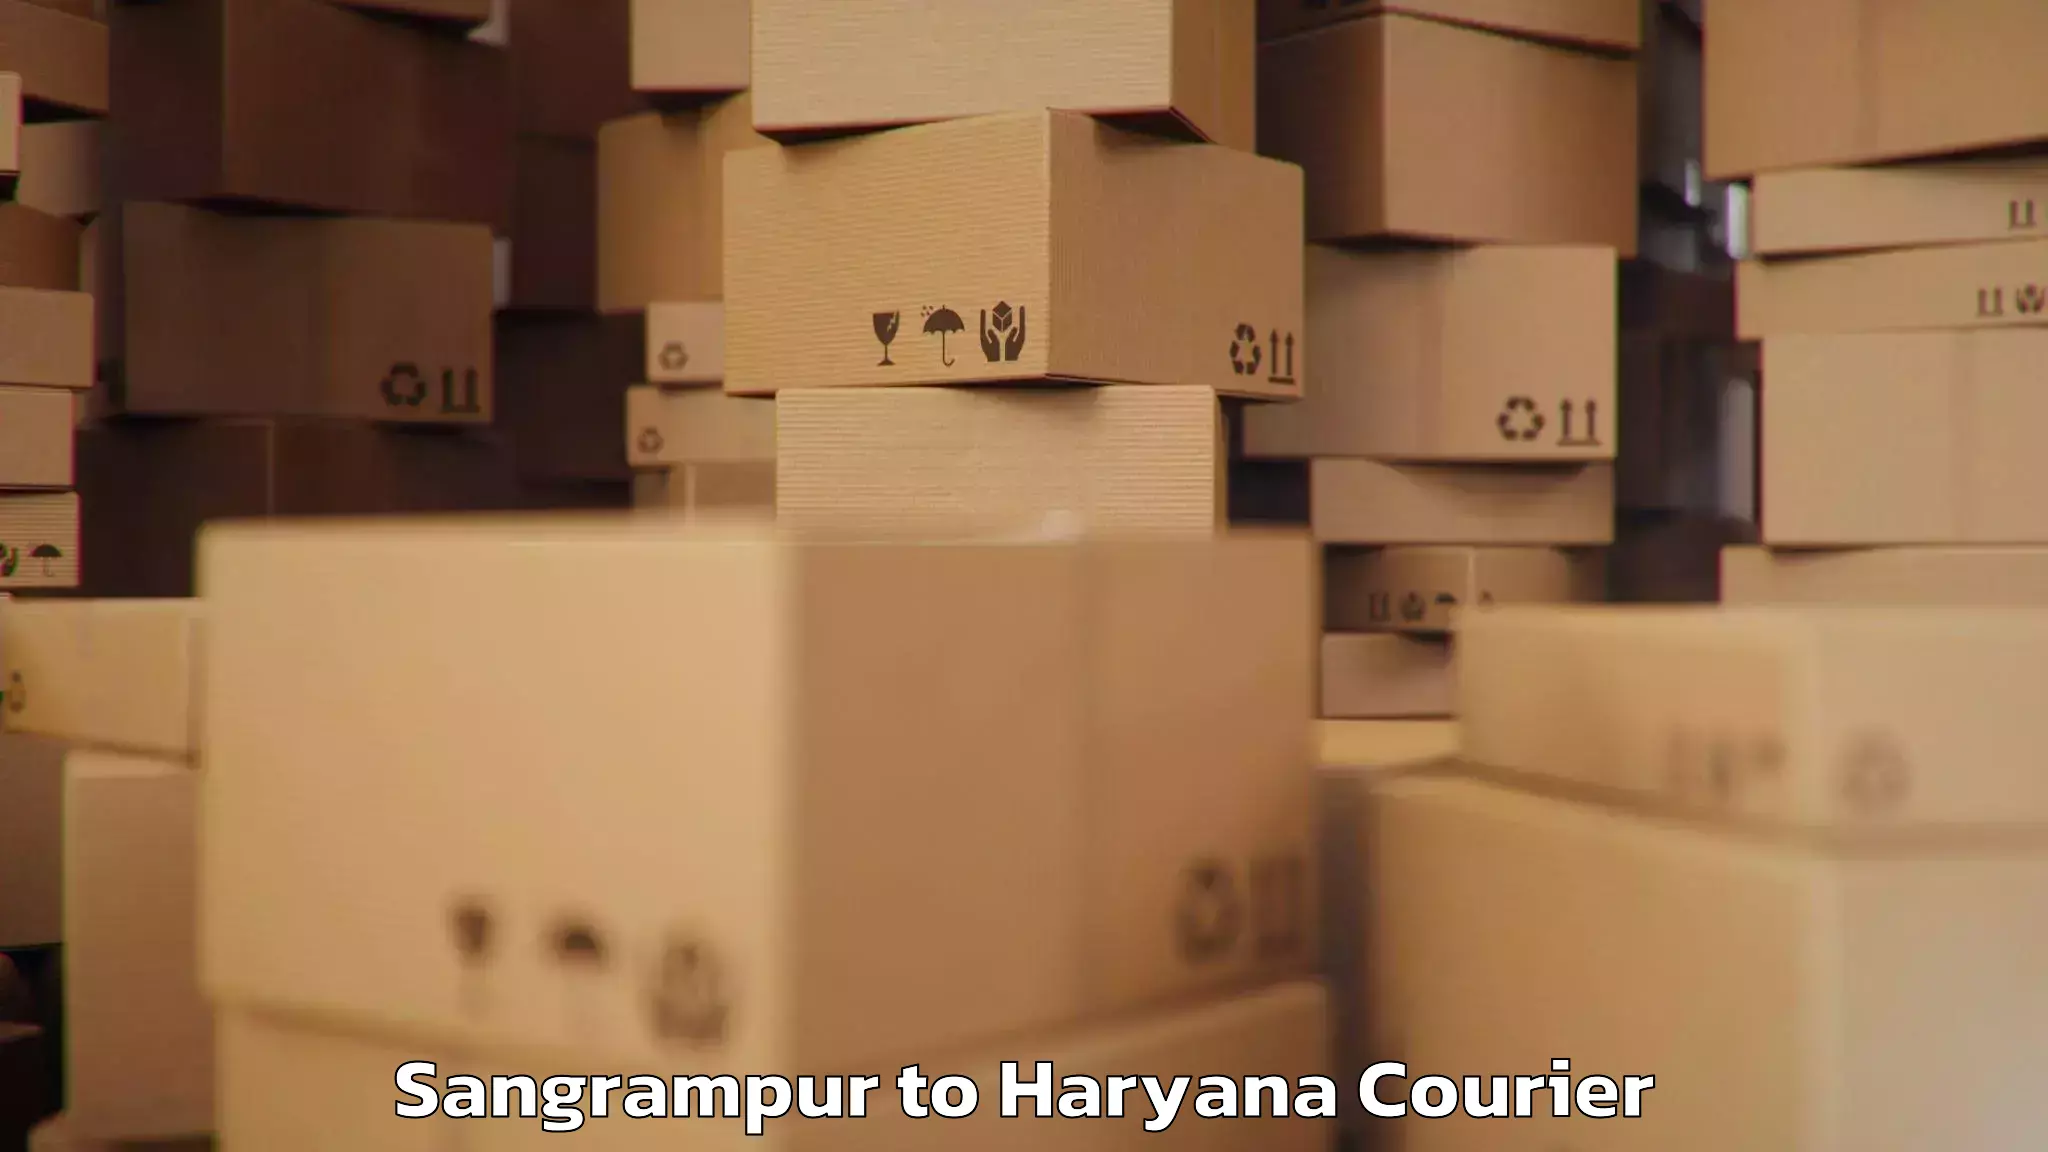 Baggage transport scheduler Sangrampur to Bilaspur Haryana